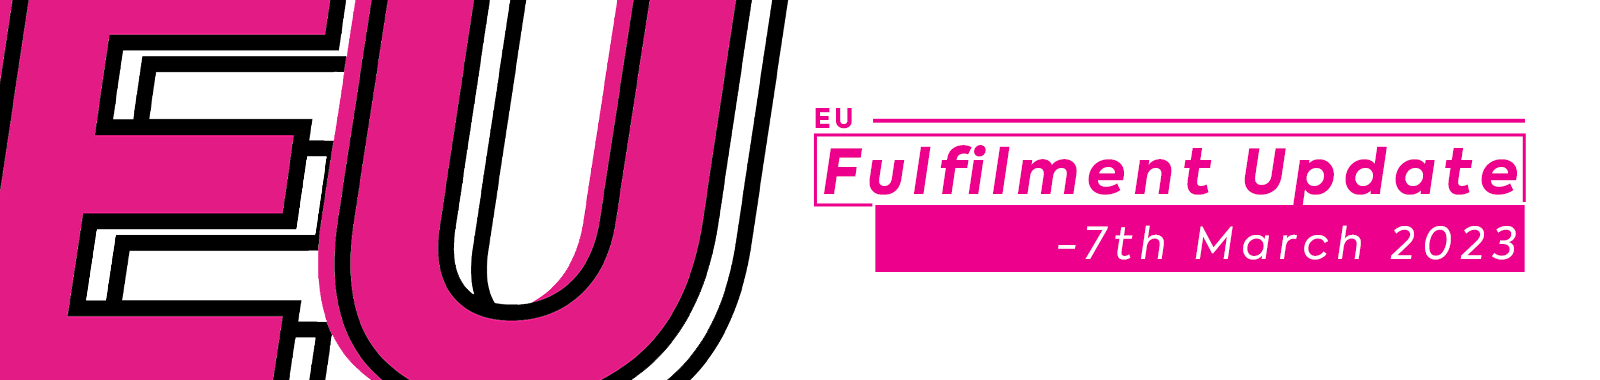 EU Fulfilment Update - 7th March